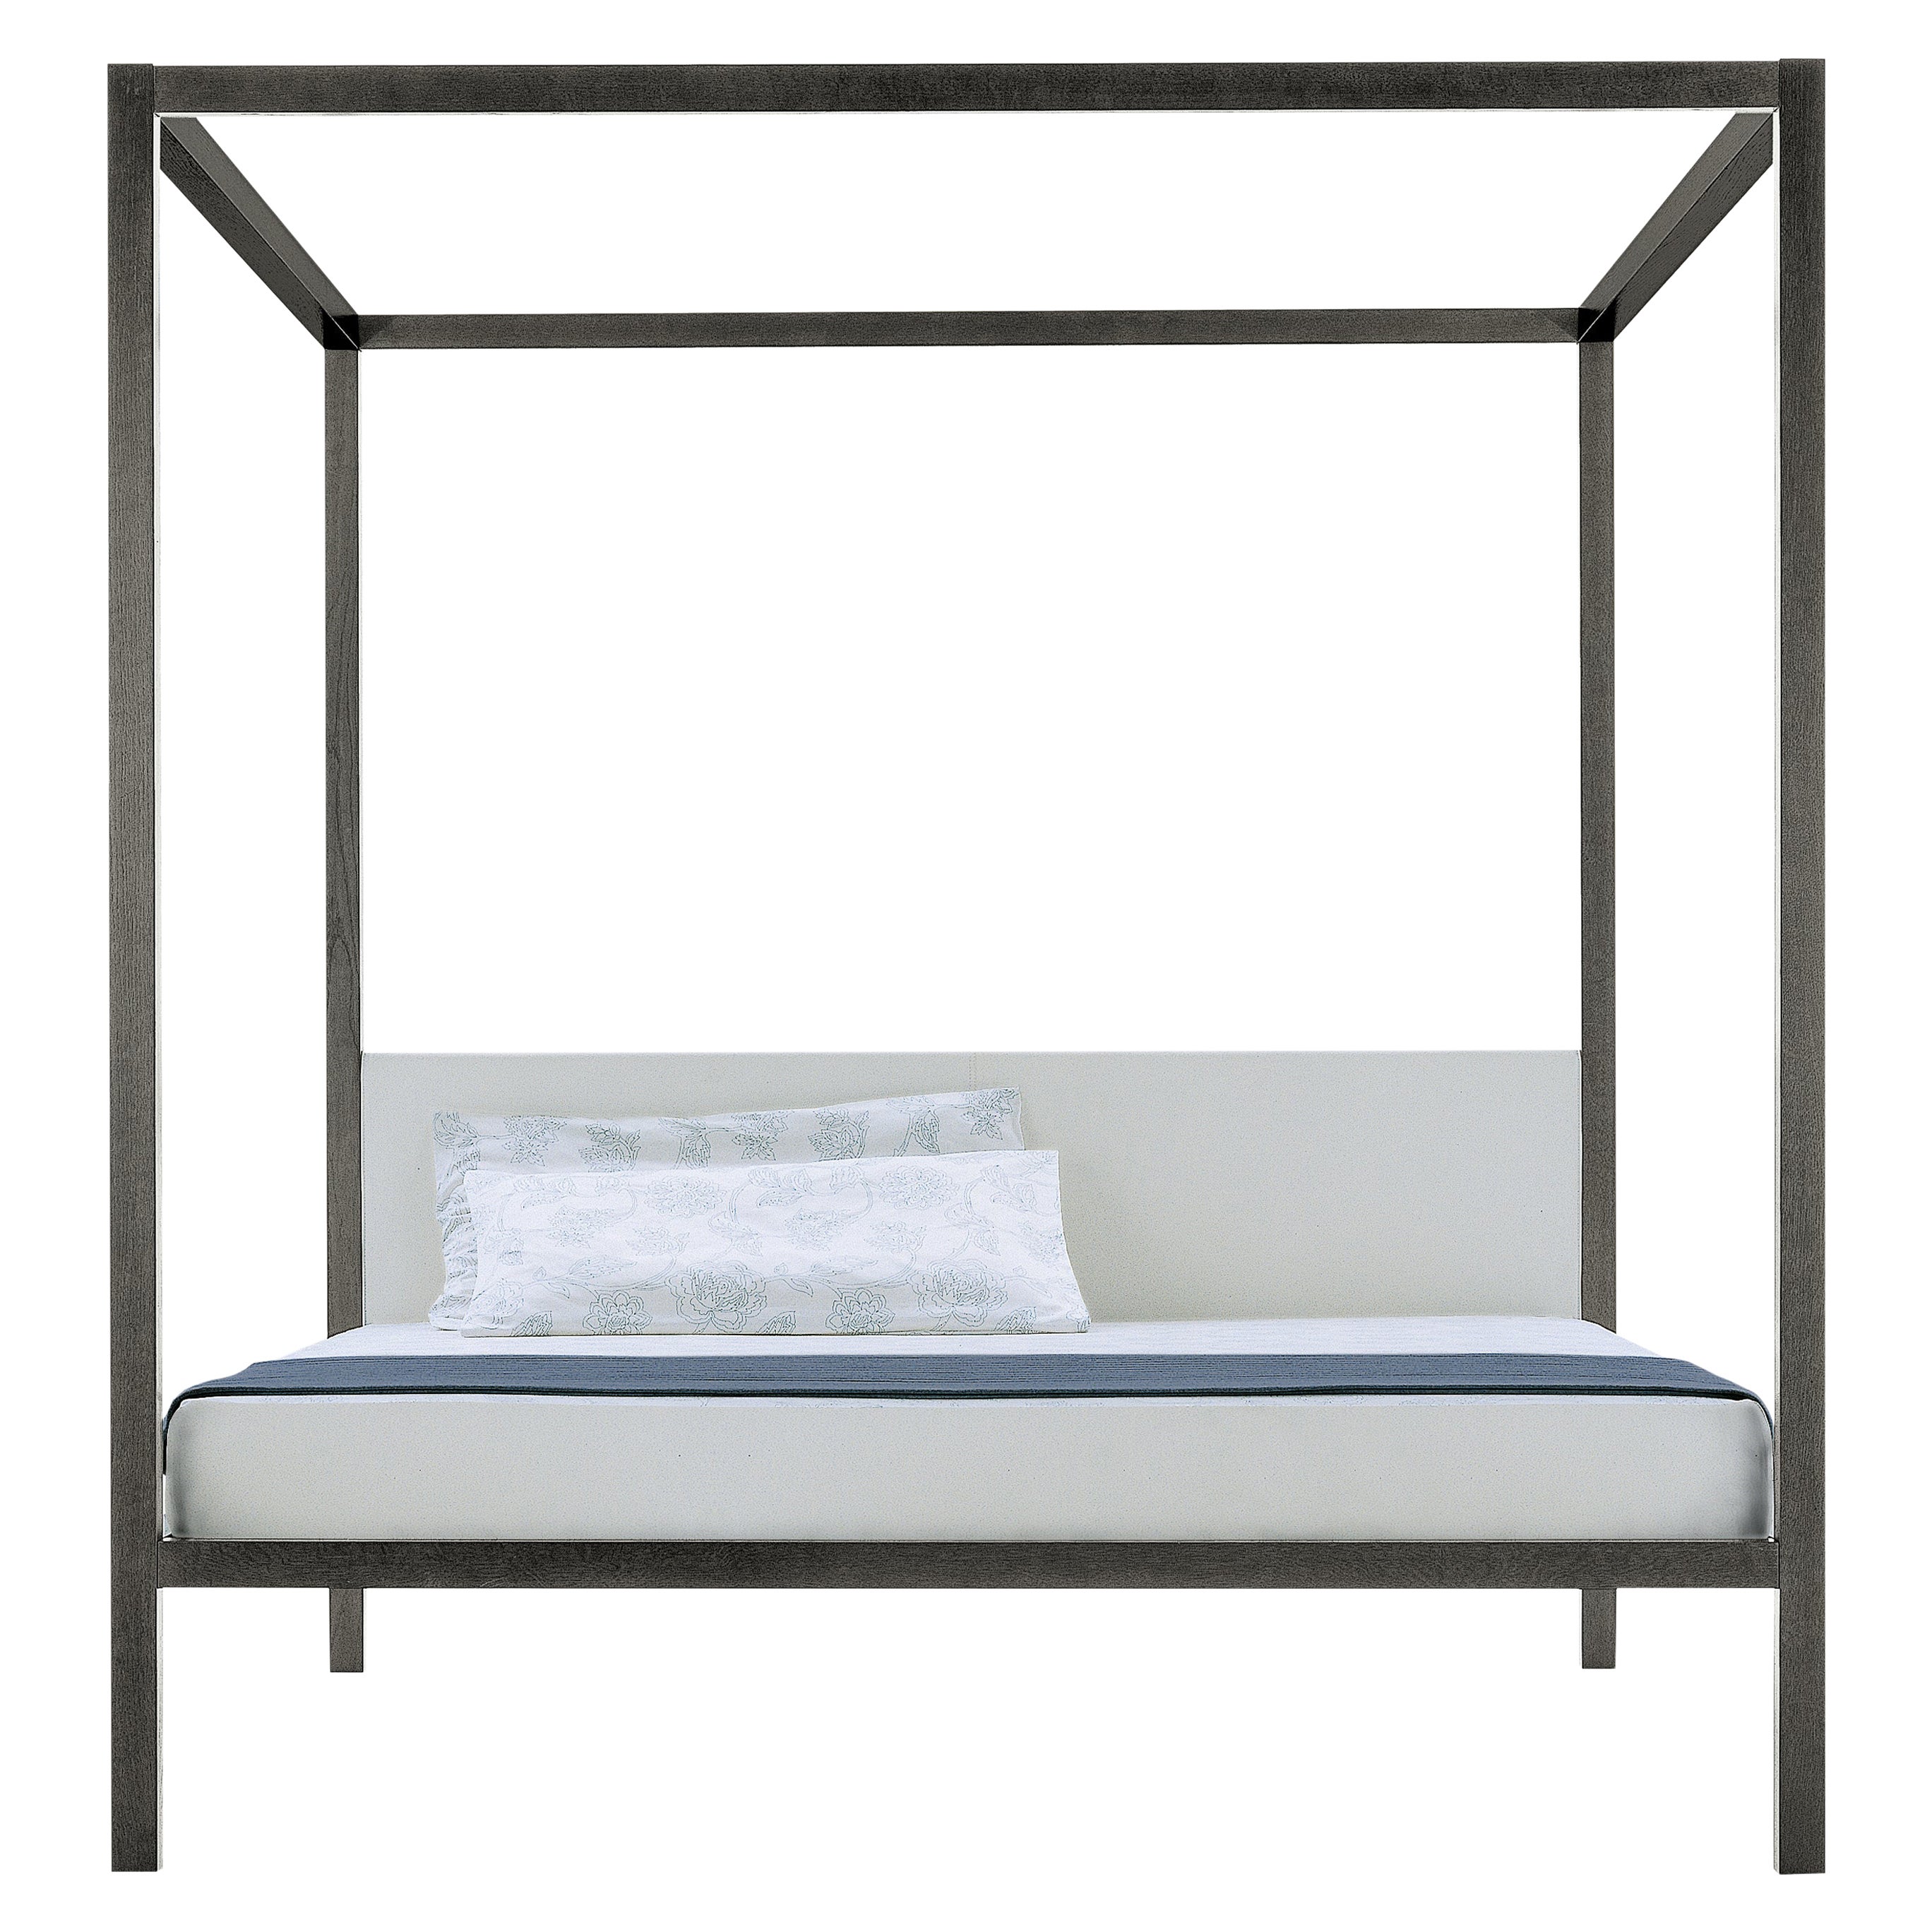 Zanotta Large Milleunanotte Four-Poster Bed & Canopy in Grey Varnished Oak Frame (lit à baldaquin et baldaquin en chêne verni gris)